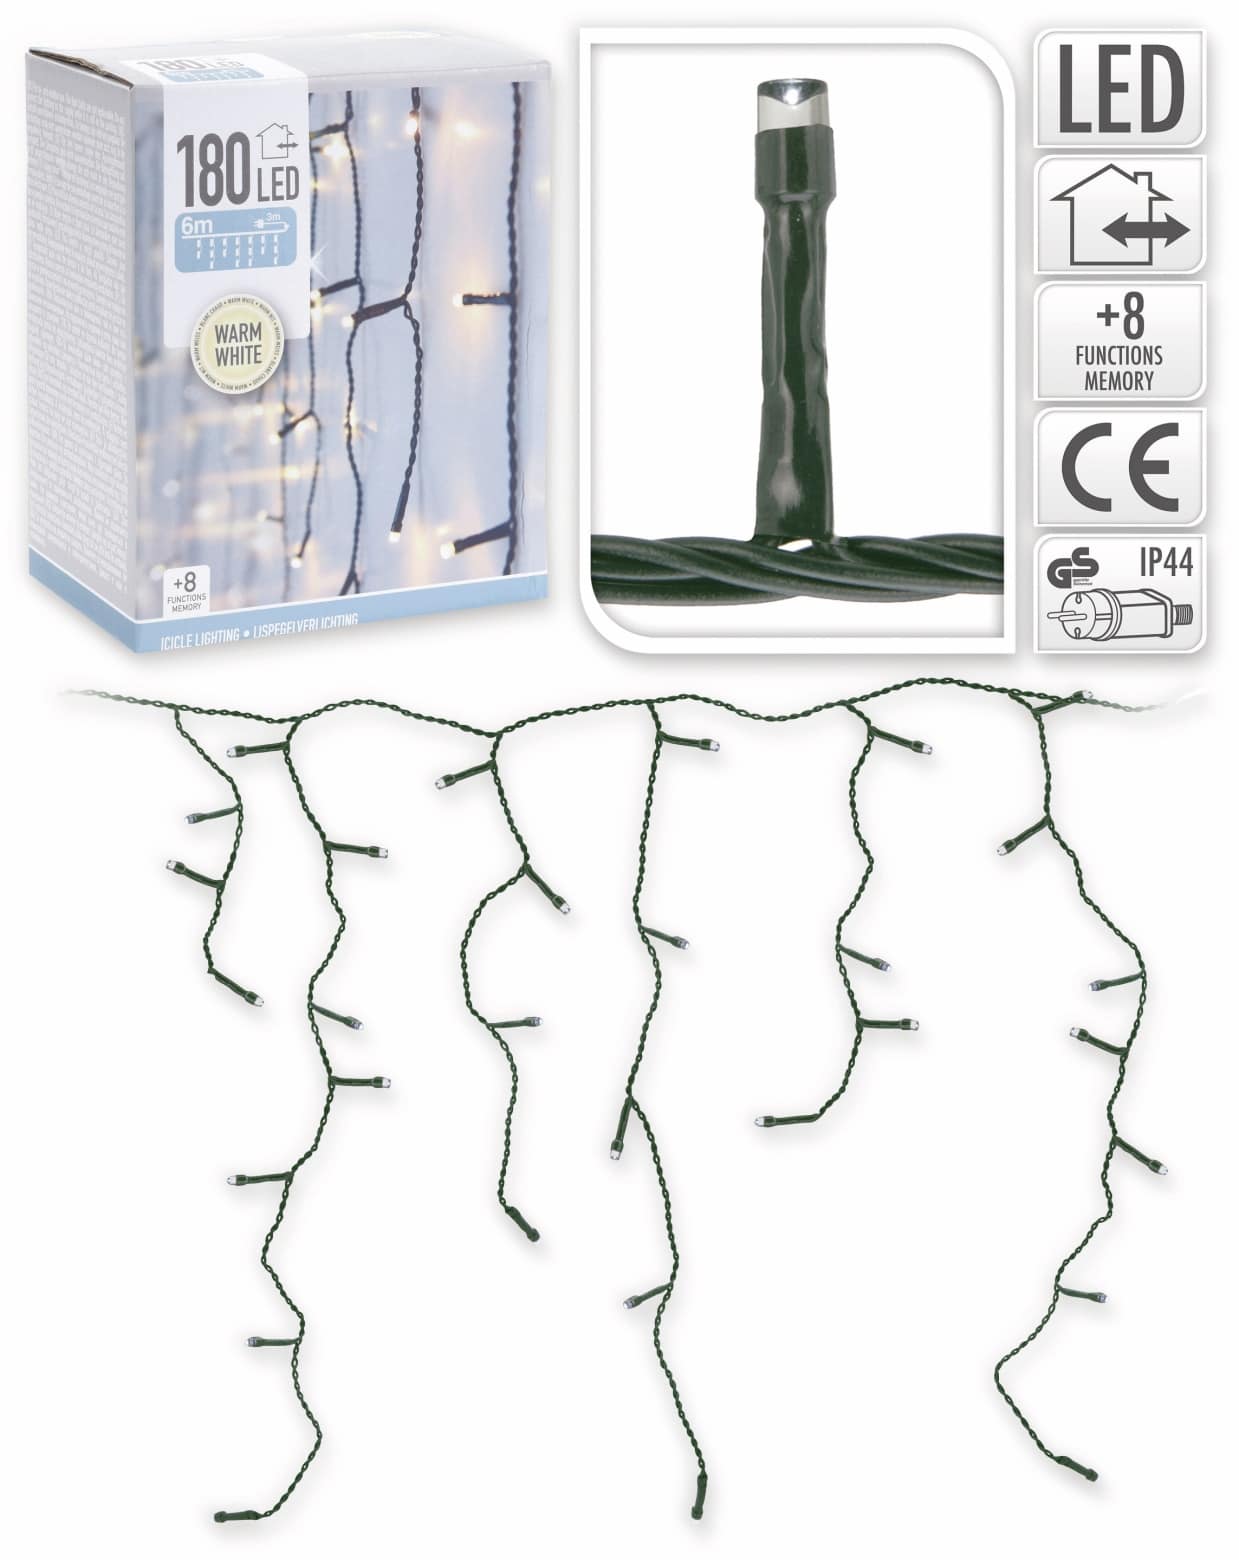 LED-Lichterkette Eiszapfen ,180 LEDs, 230 V~, IP 44, 8 Funktionen, Warmweiß